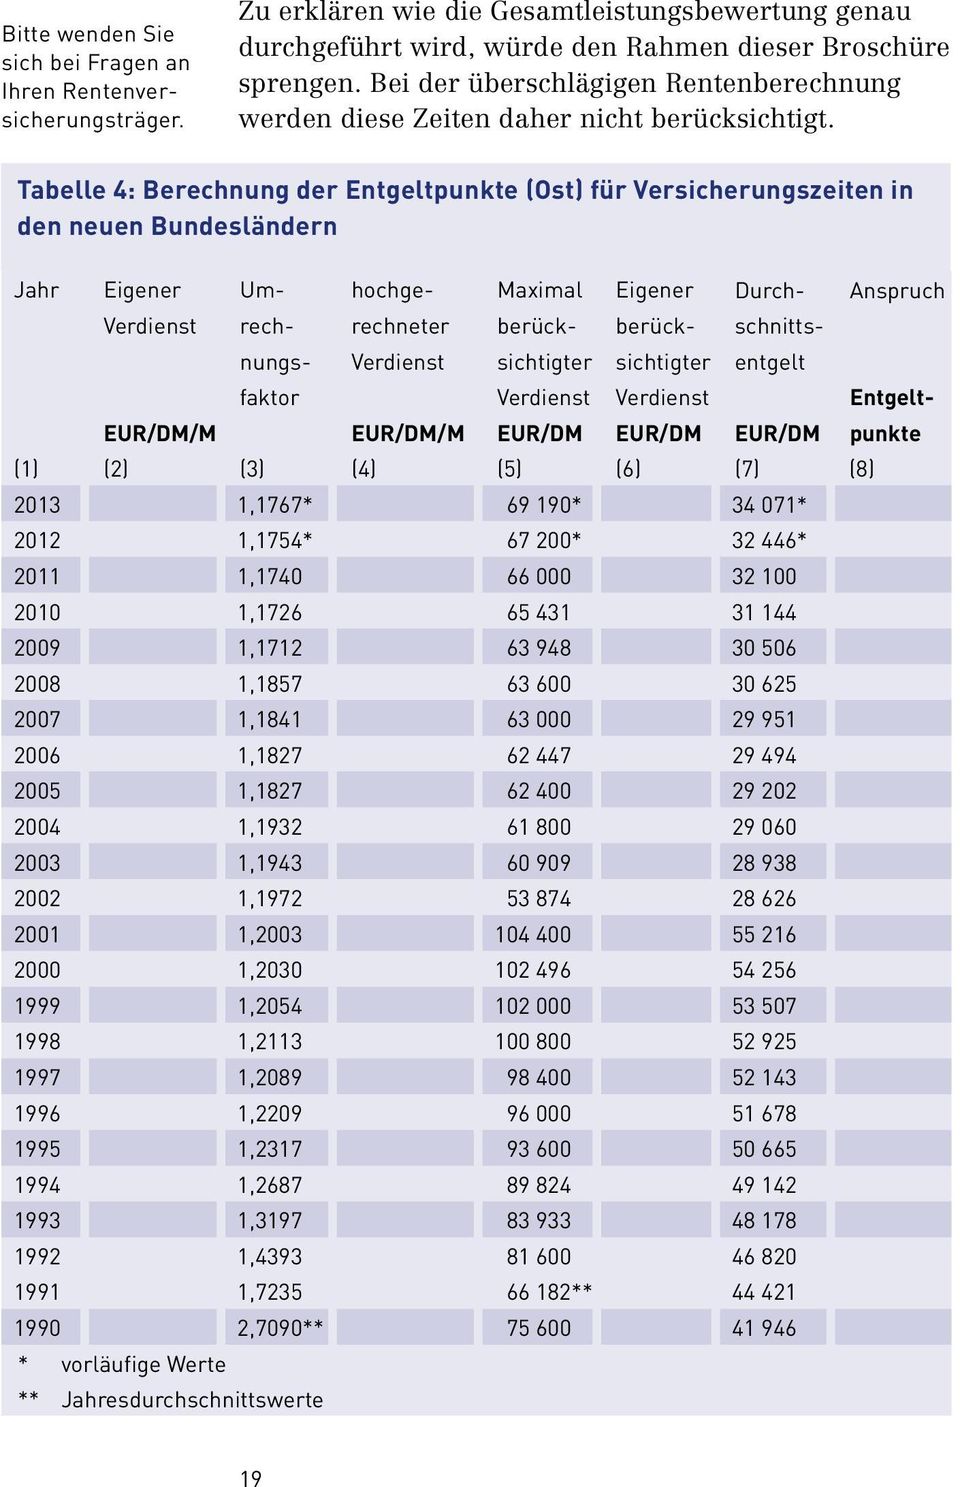 Tabelle 4: Berechnung der Entgeltpunkte (Ost) für Versicherungszeiten in den neuen Bundesländern Jahr Eigener Verdienst Umrechnungsfaktor Anspruch hochgerechneter Verdienst Maximal berücksichtigter